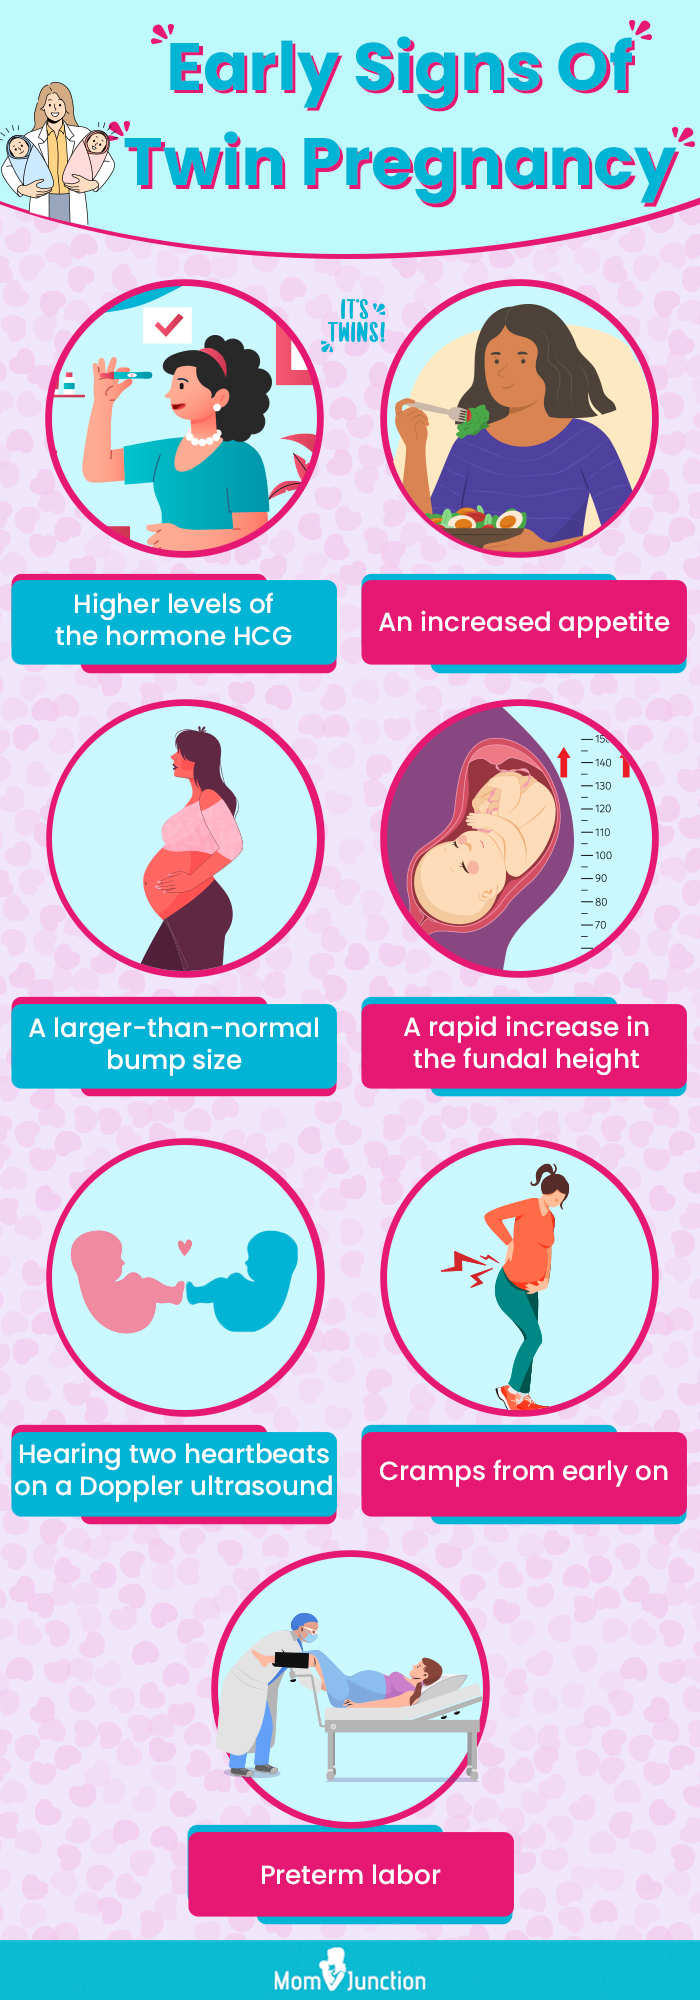 双胎妊娠的早期迹象(信息图)